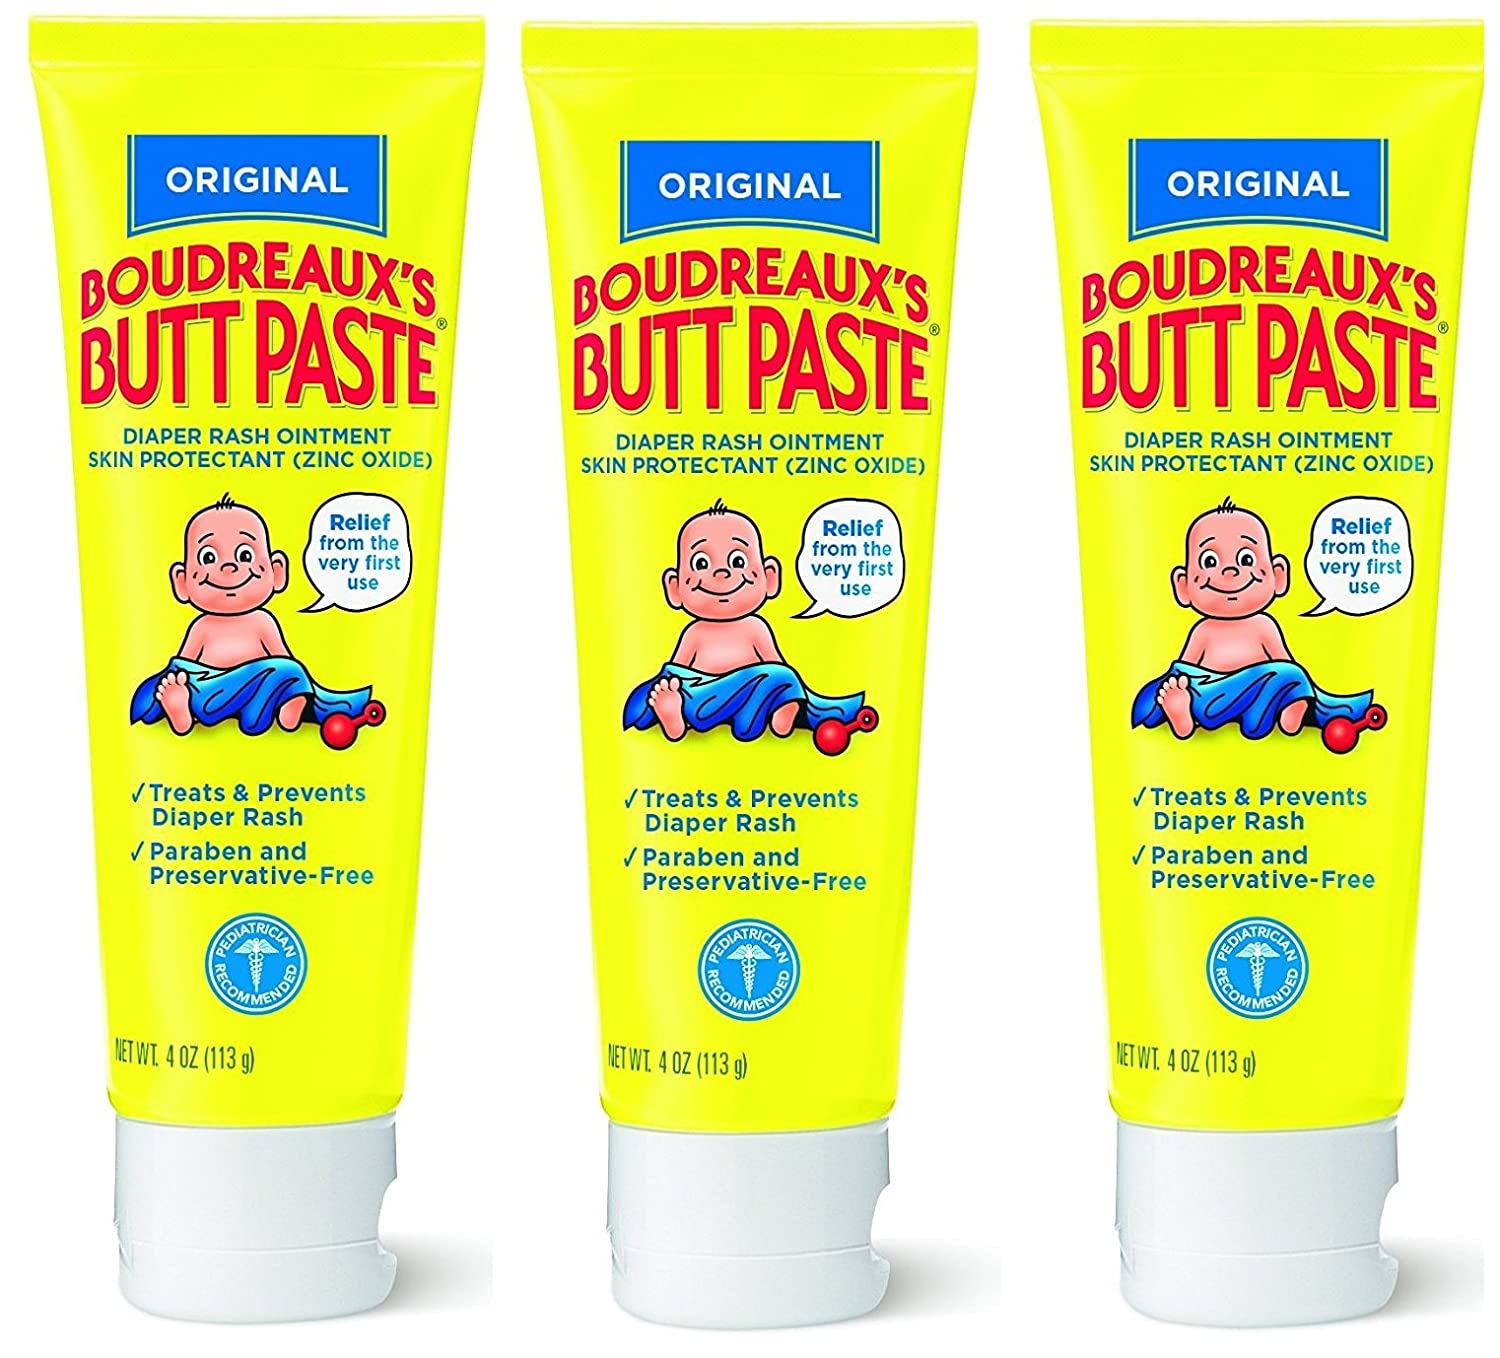 Boudreauxs Butt Paste Diaper Rash Ointment